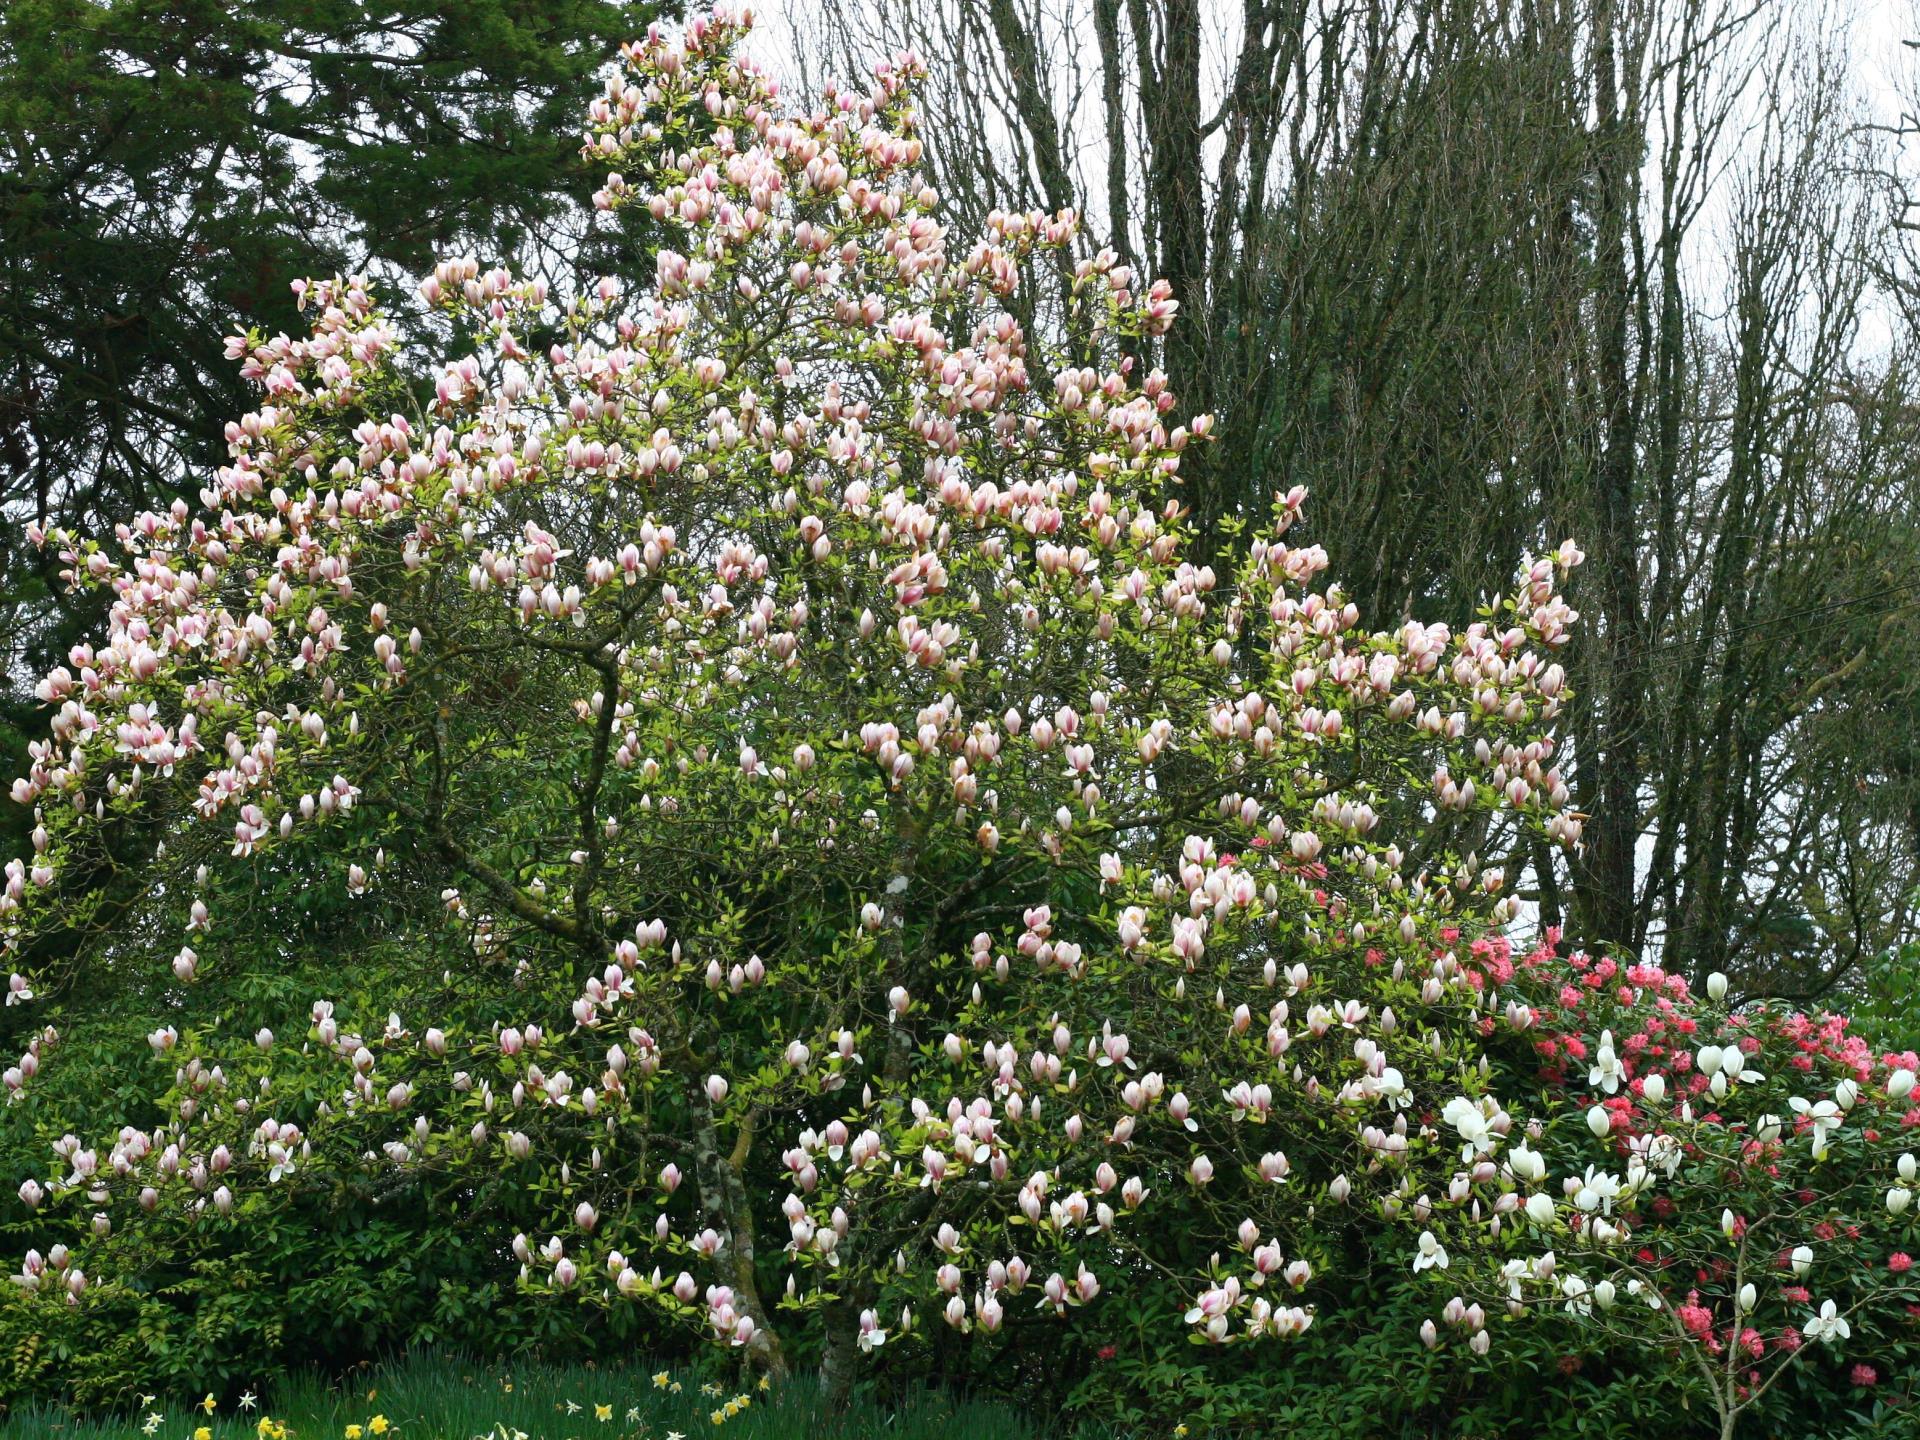 Magnificent Magnolias!